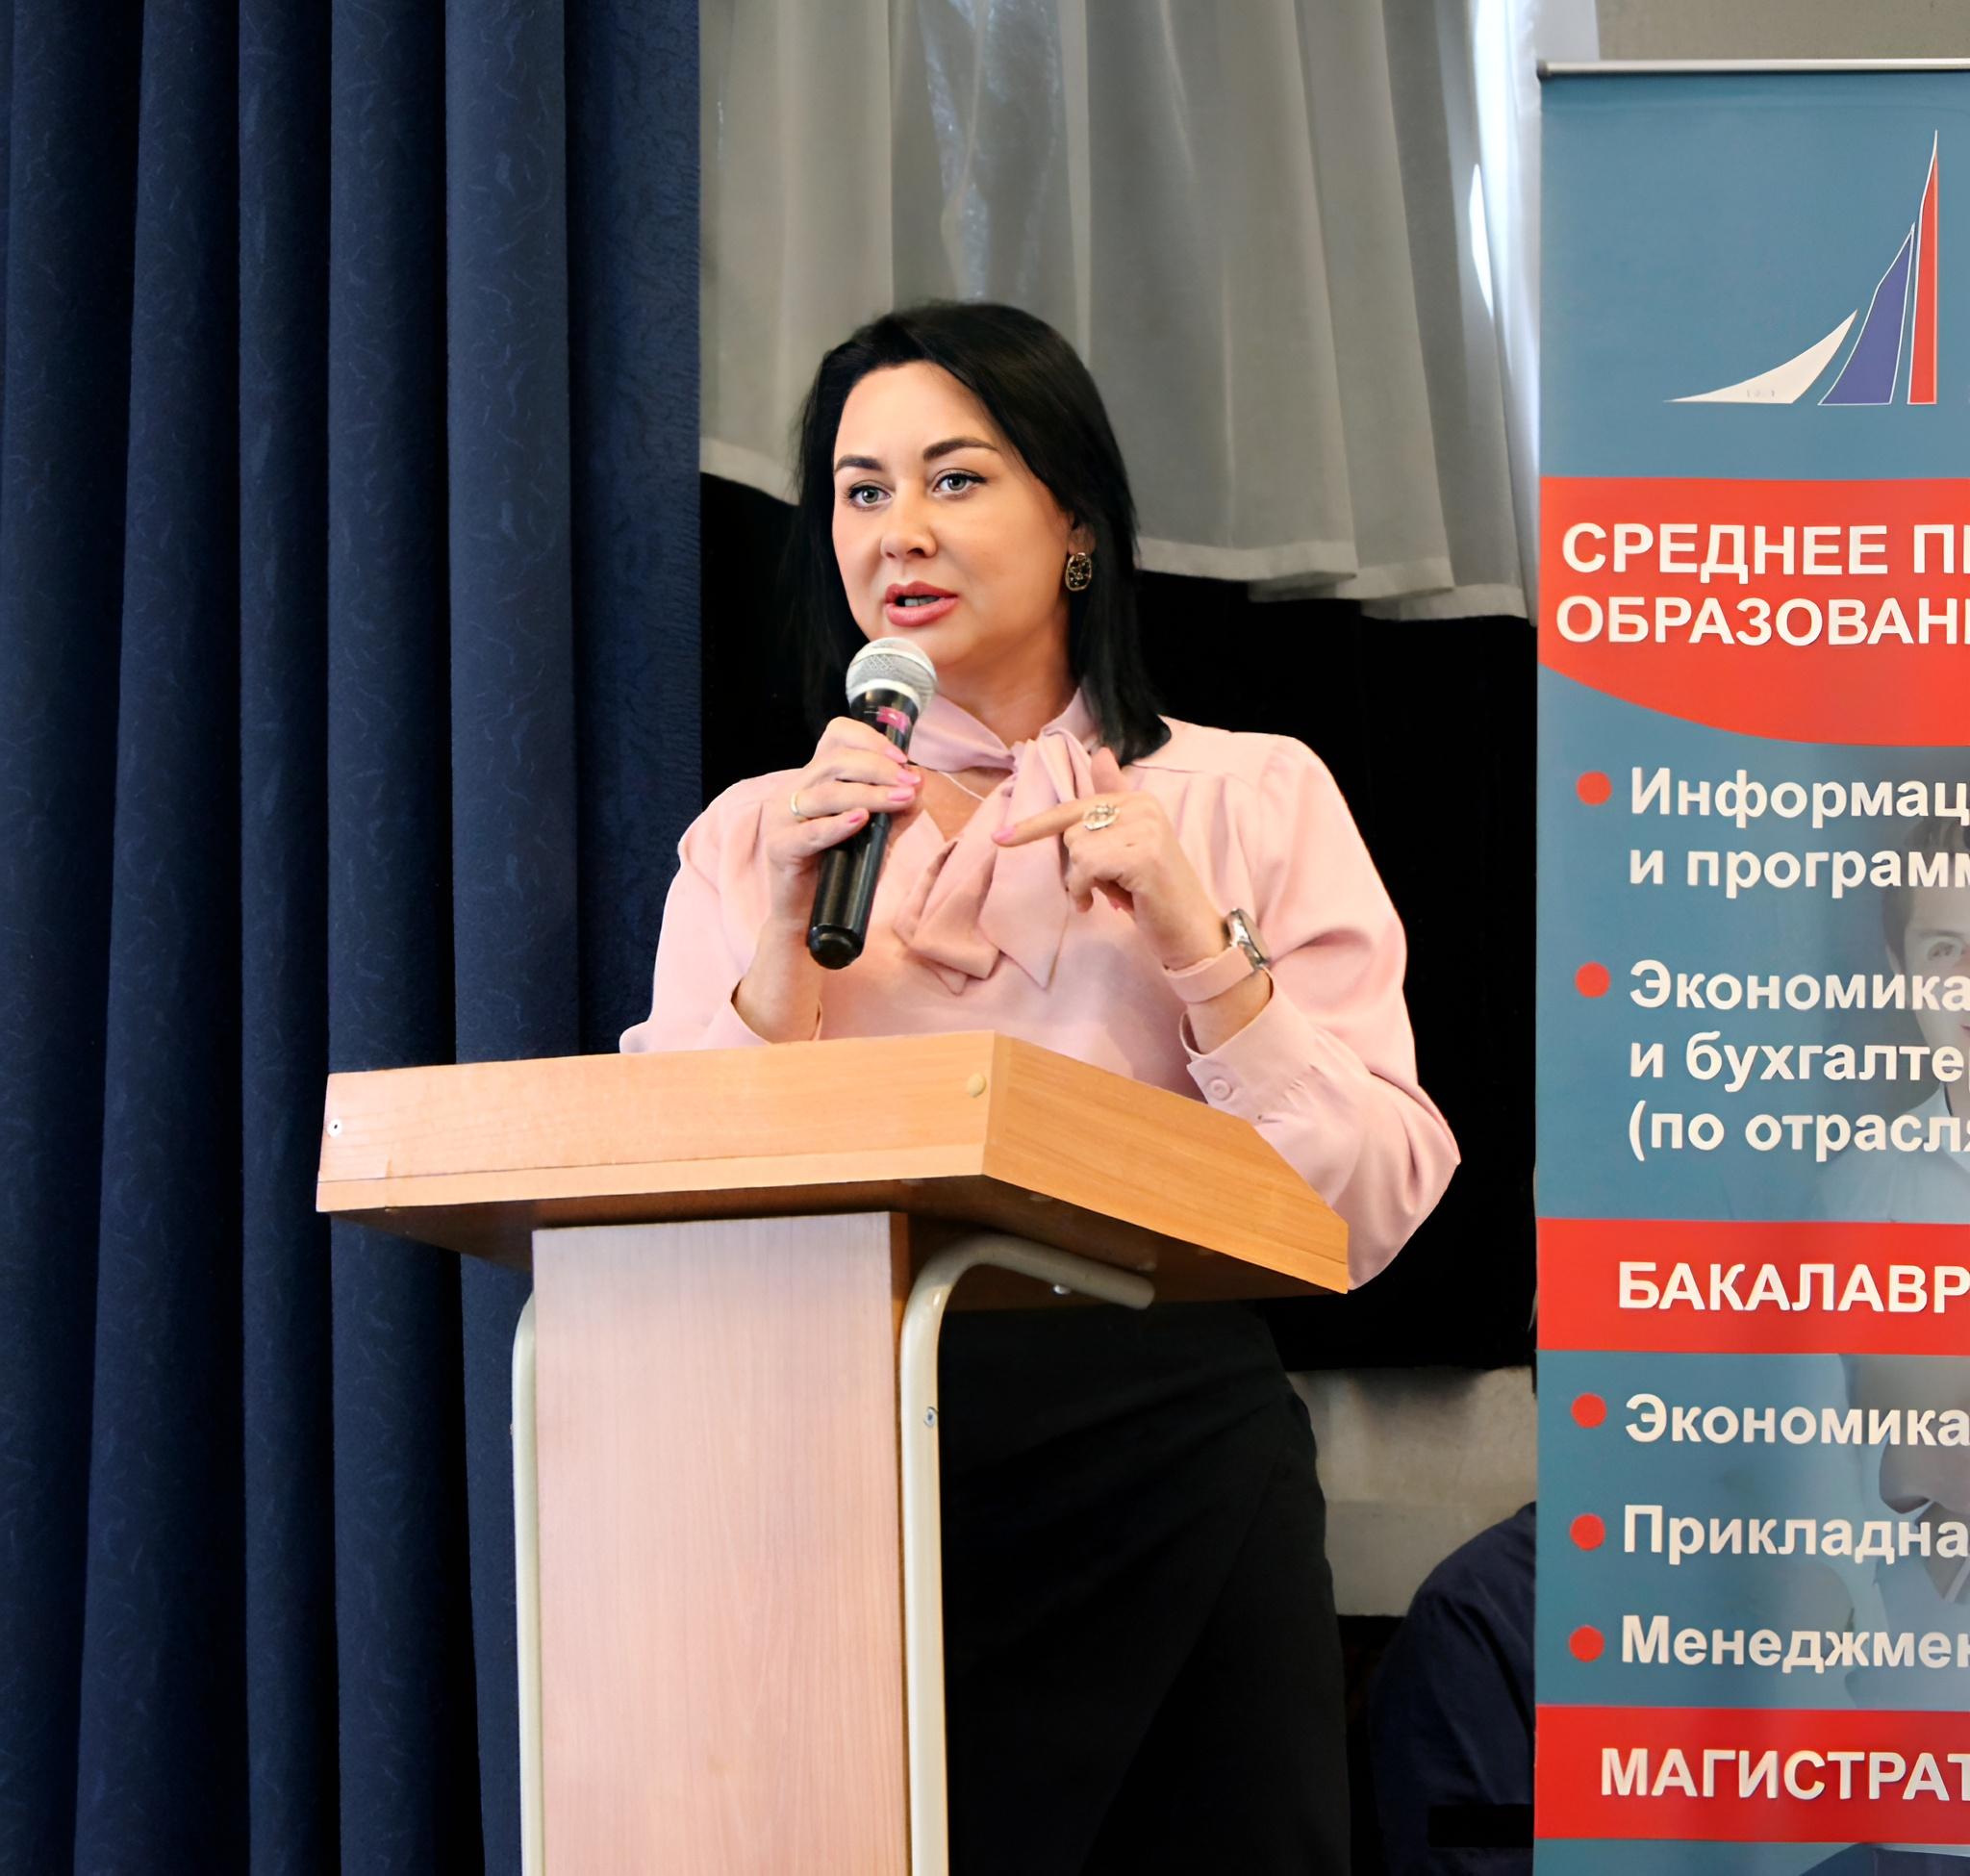 Юлия Пономарева, директор Департамента экономического развития ТПП Алтайского края